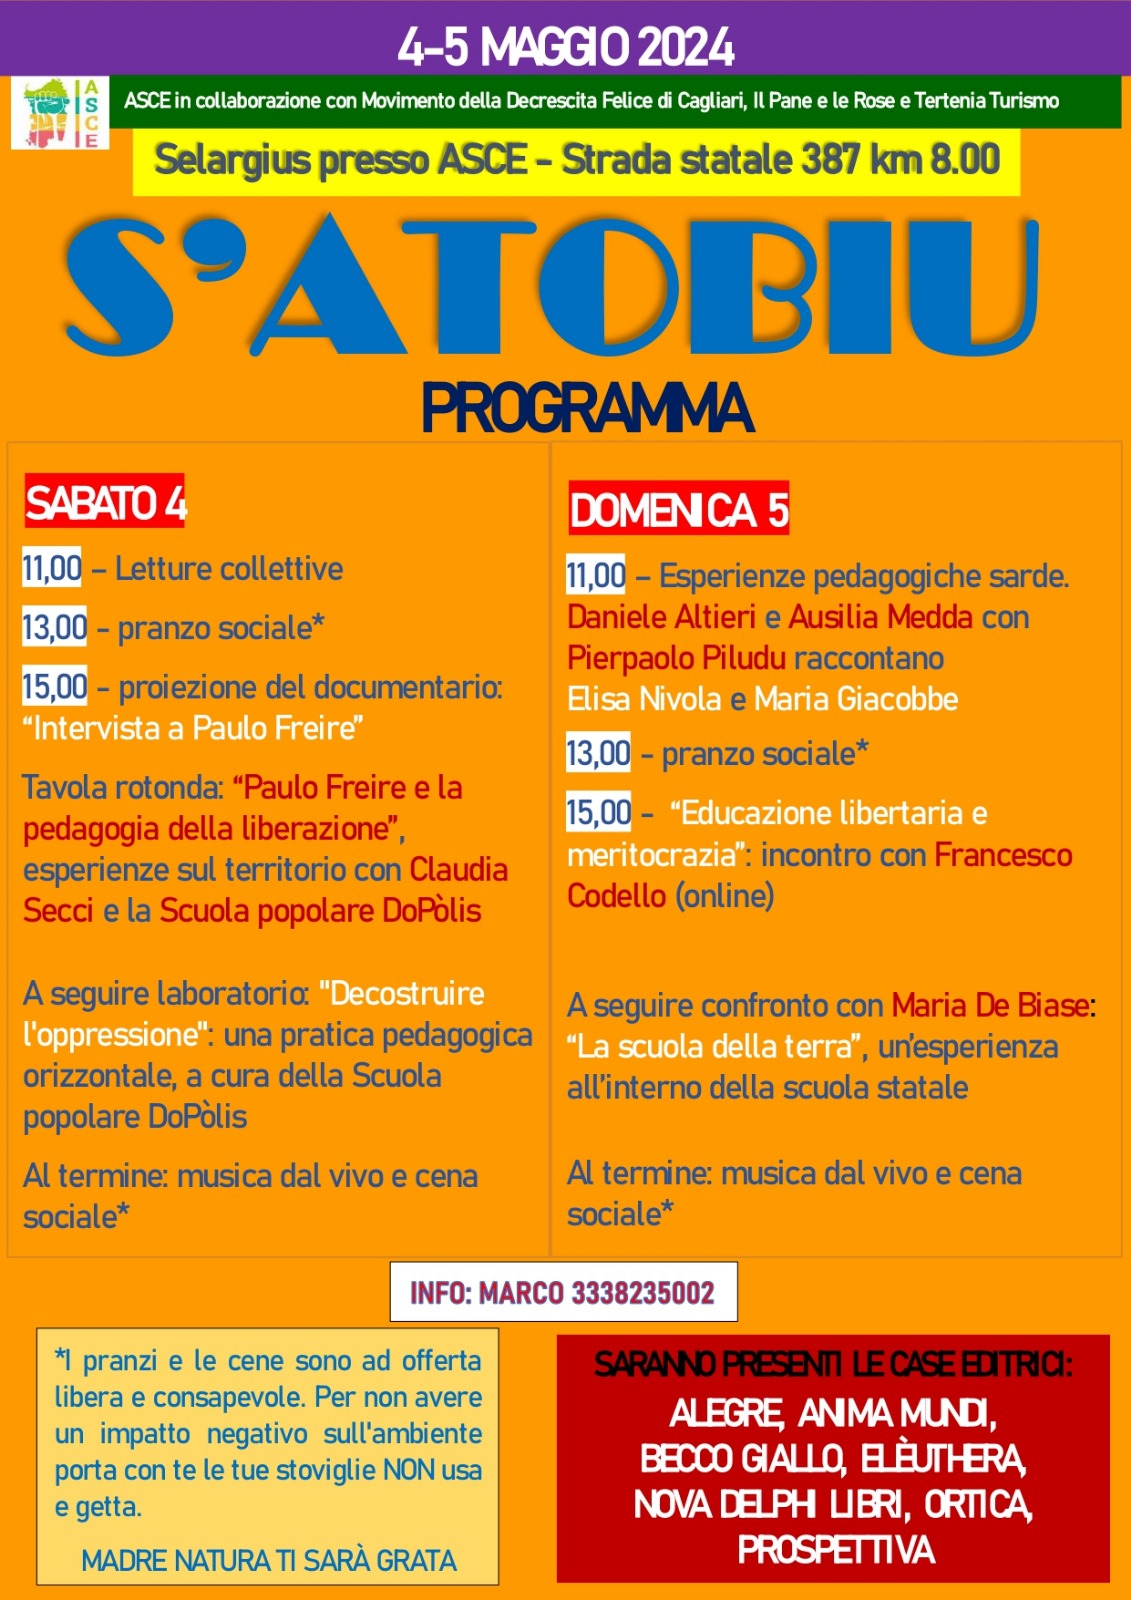 Dal 1 al 5 maggio ritorna S’Atobiu, festival della piccola editoria indipendente